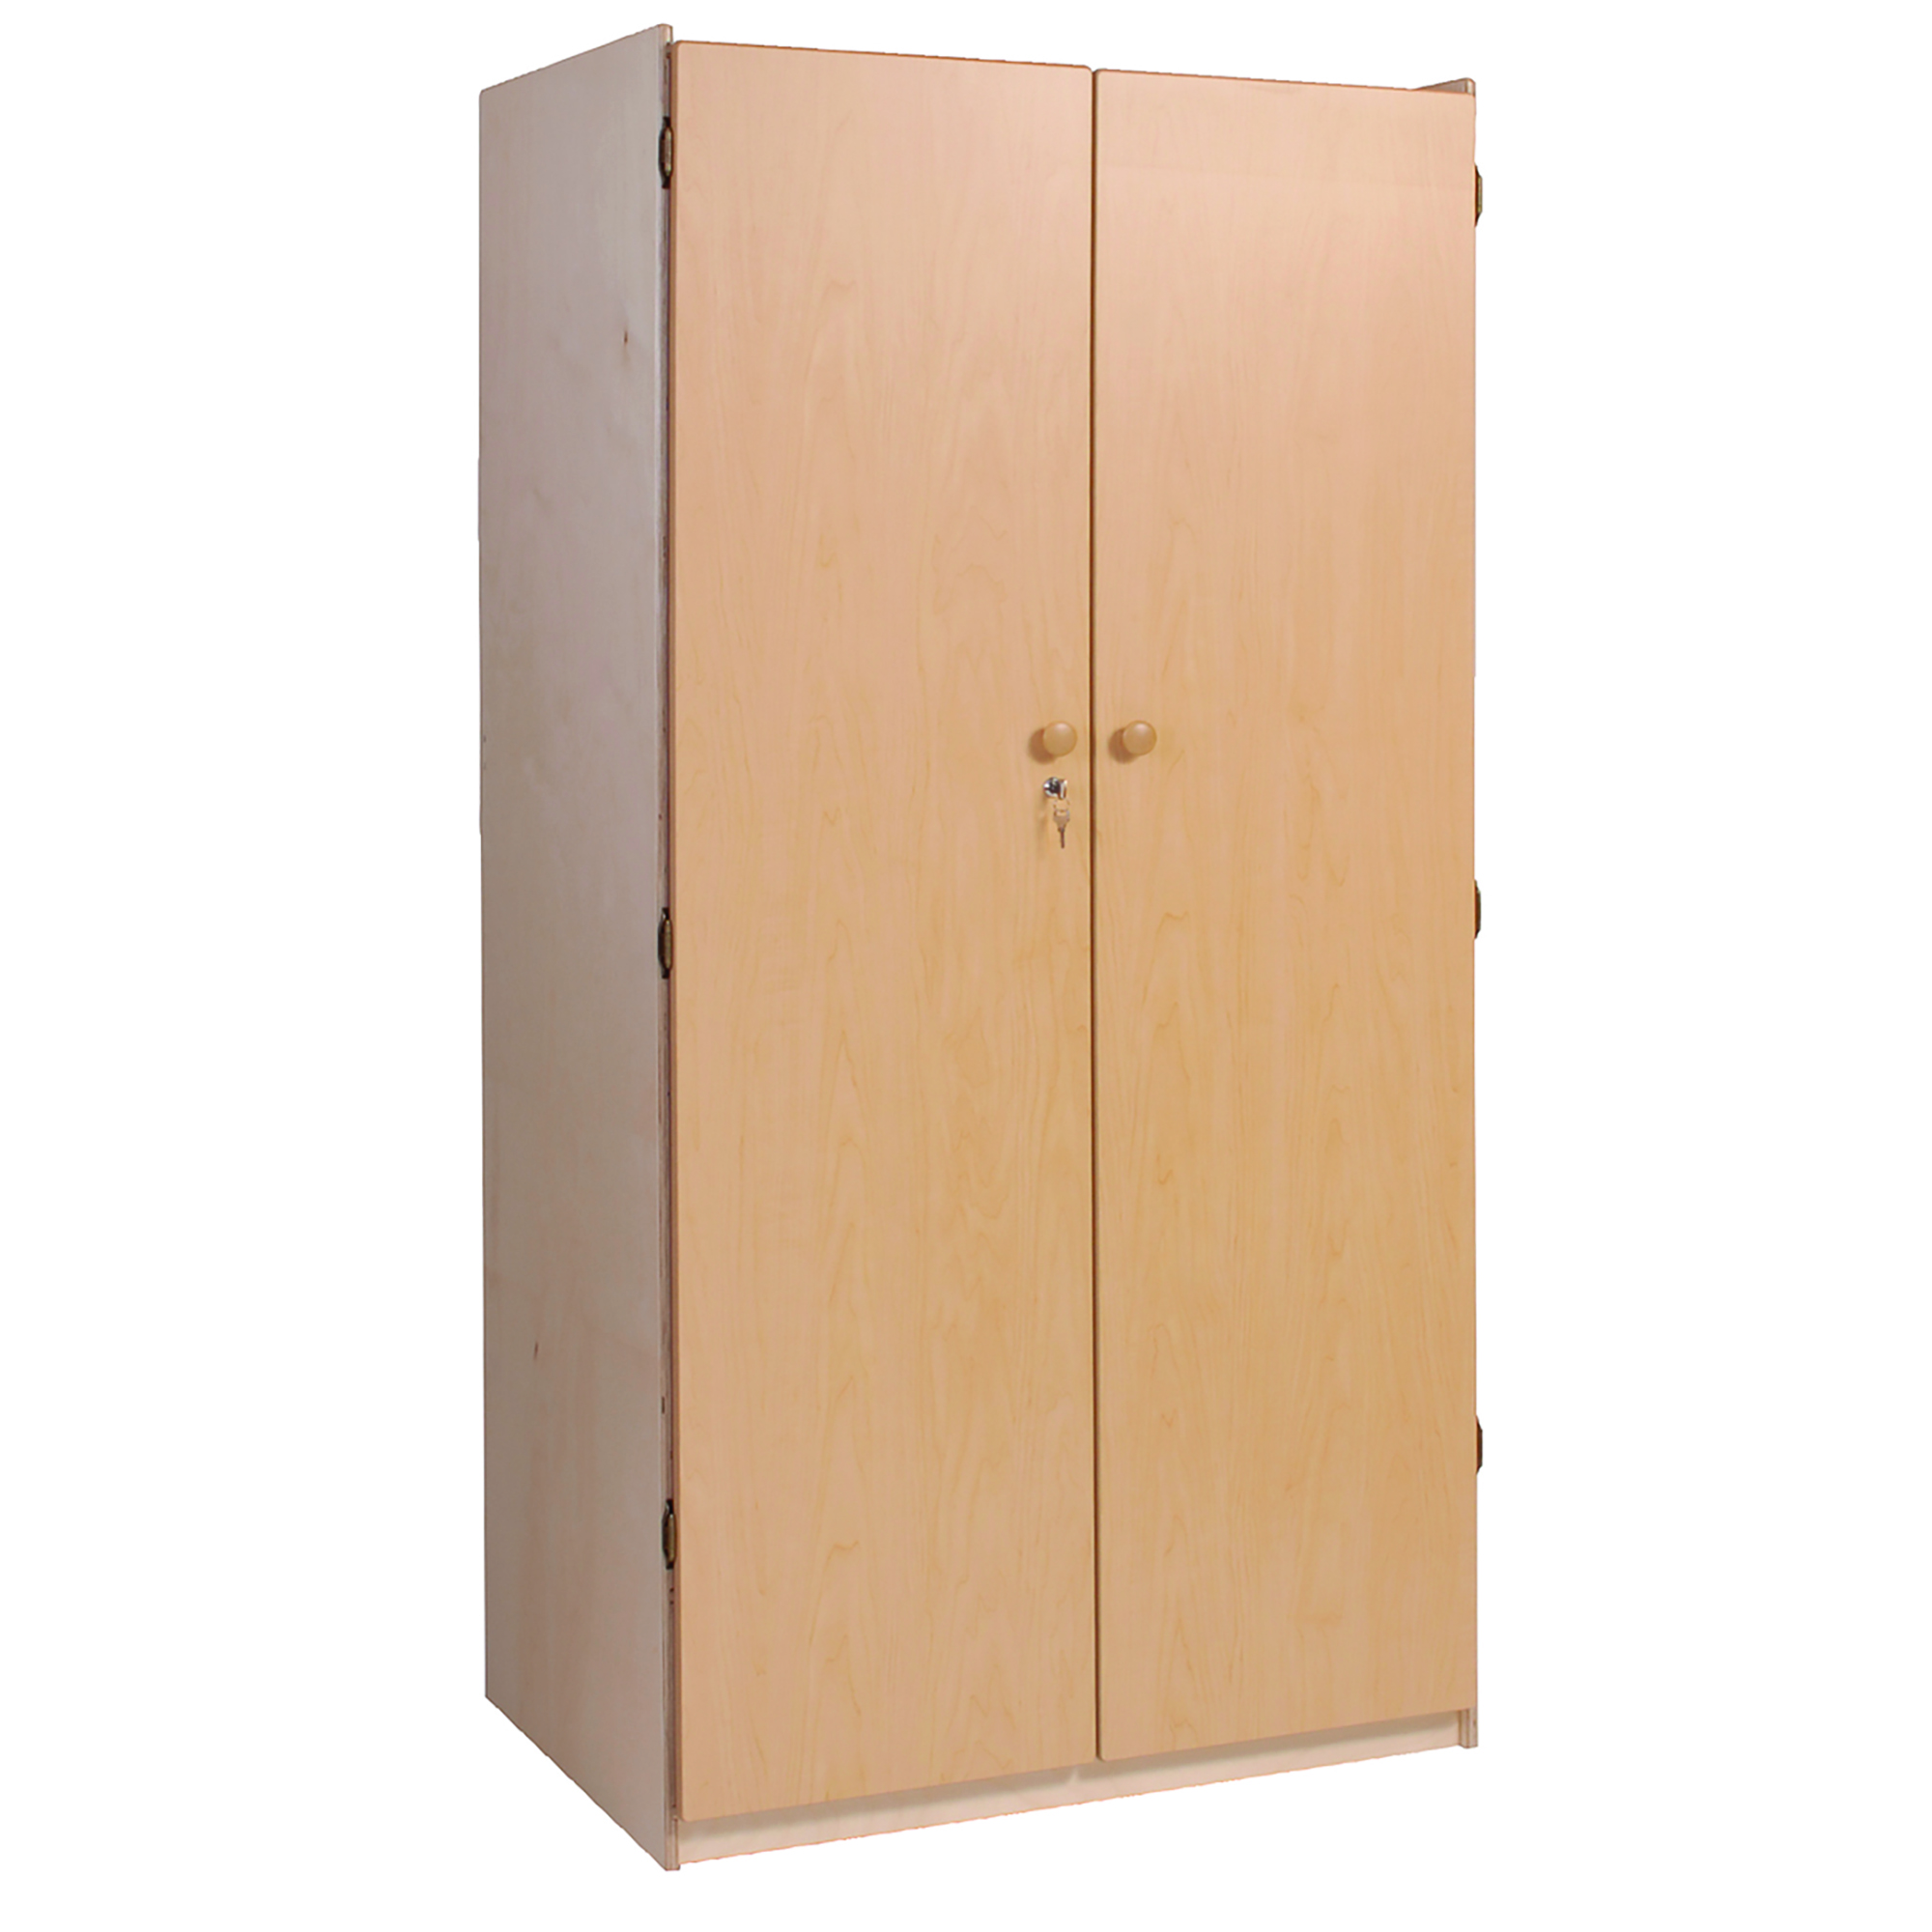 Teacher S Locking Storage Cabinet, Locking Wooden Storage Cabinet